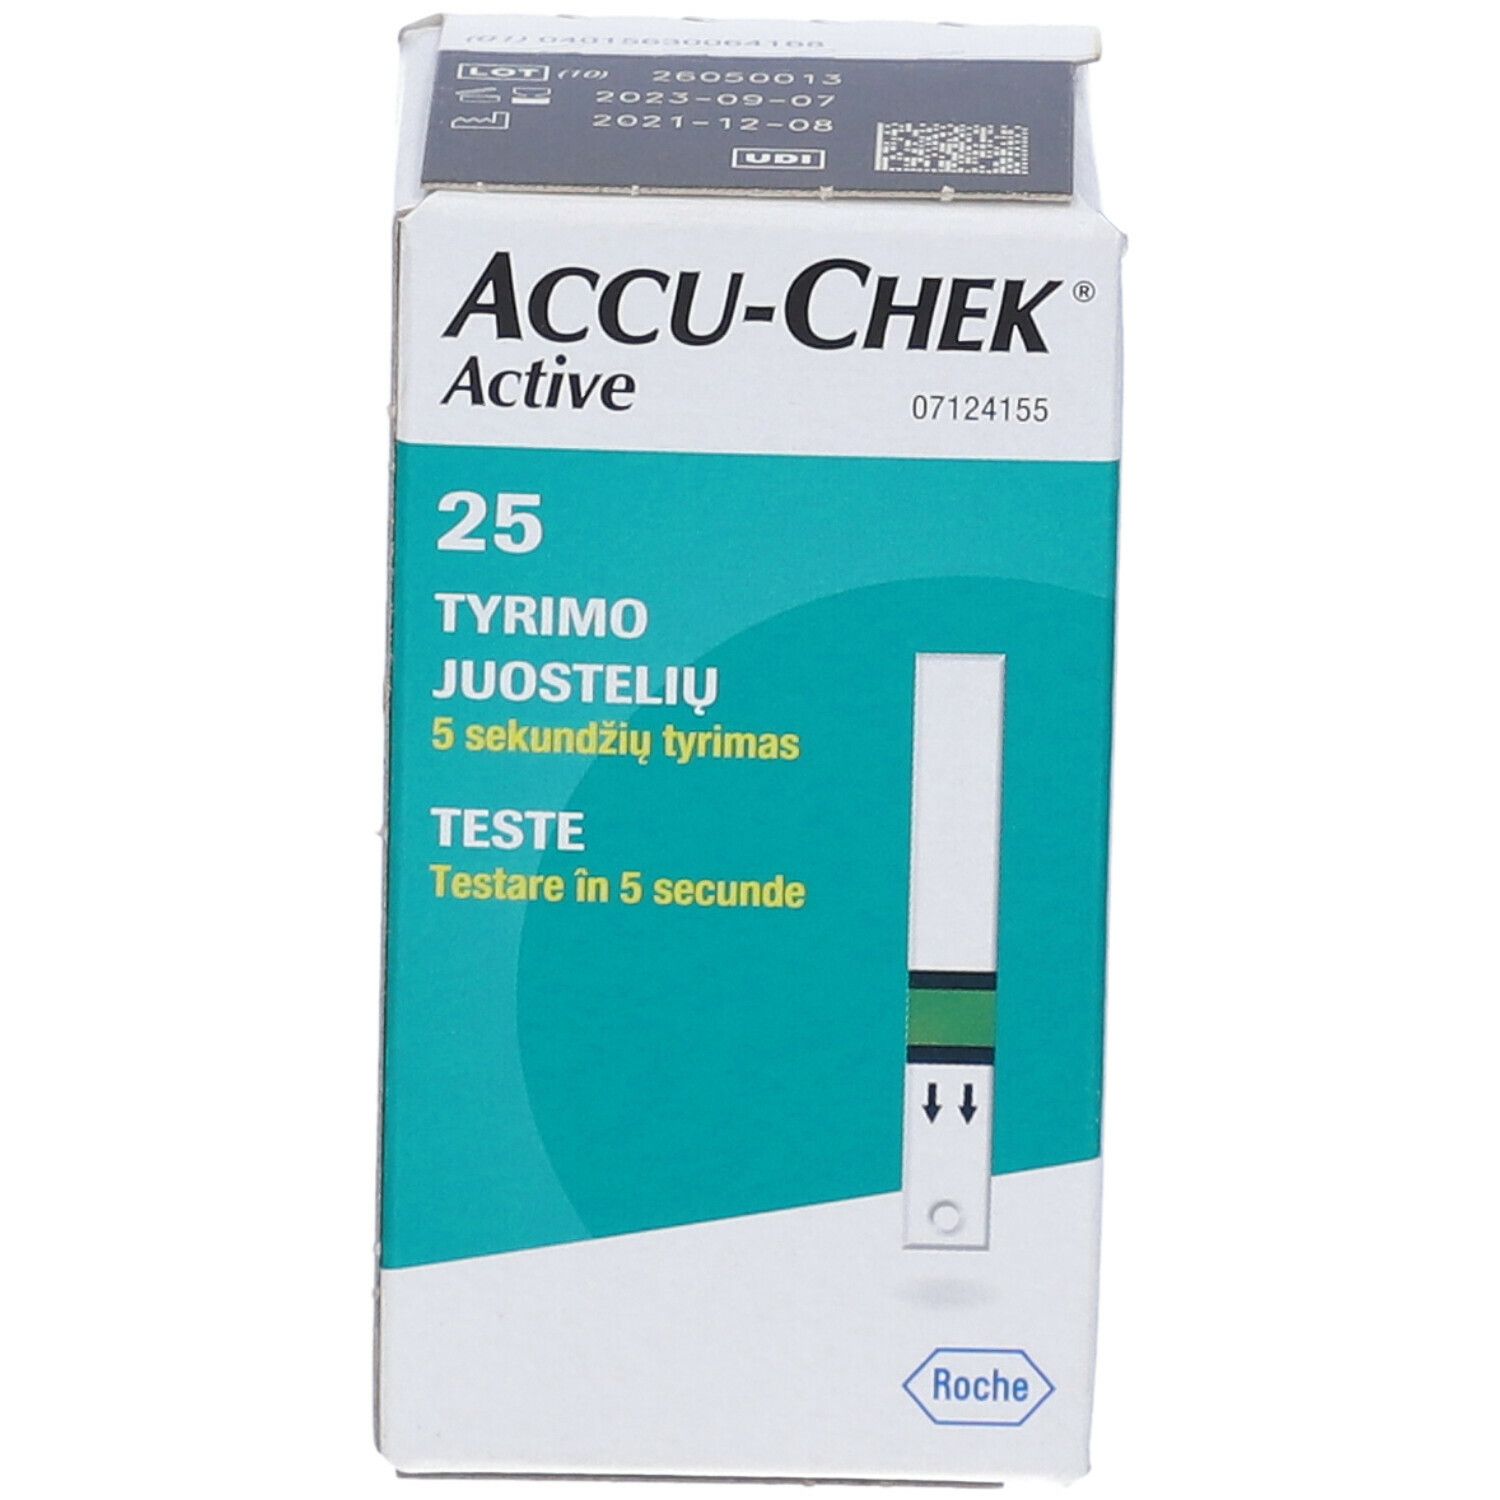 ACCU-CHEK® Active Strisce